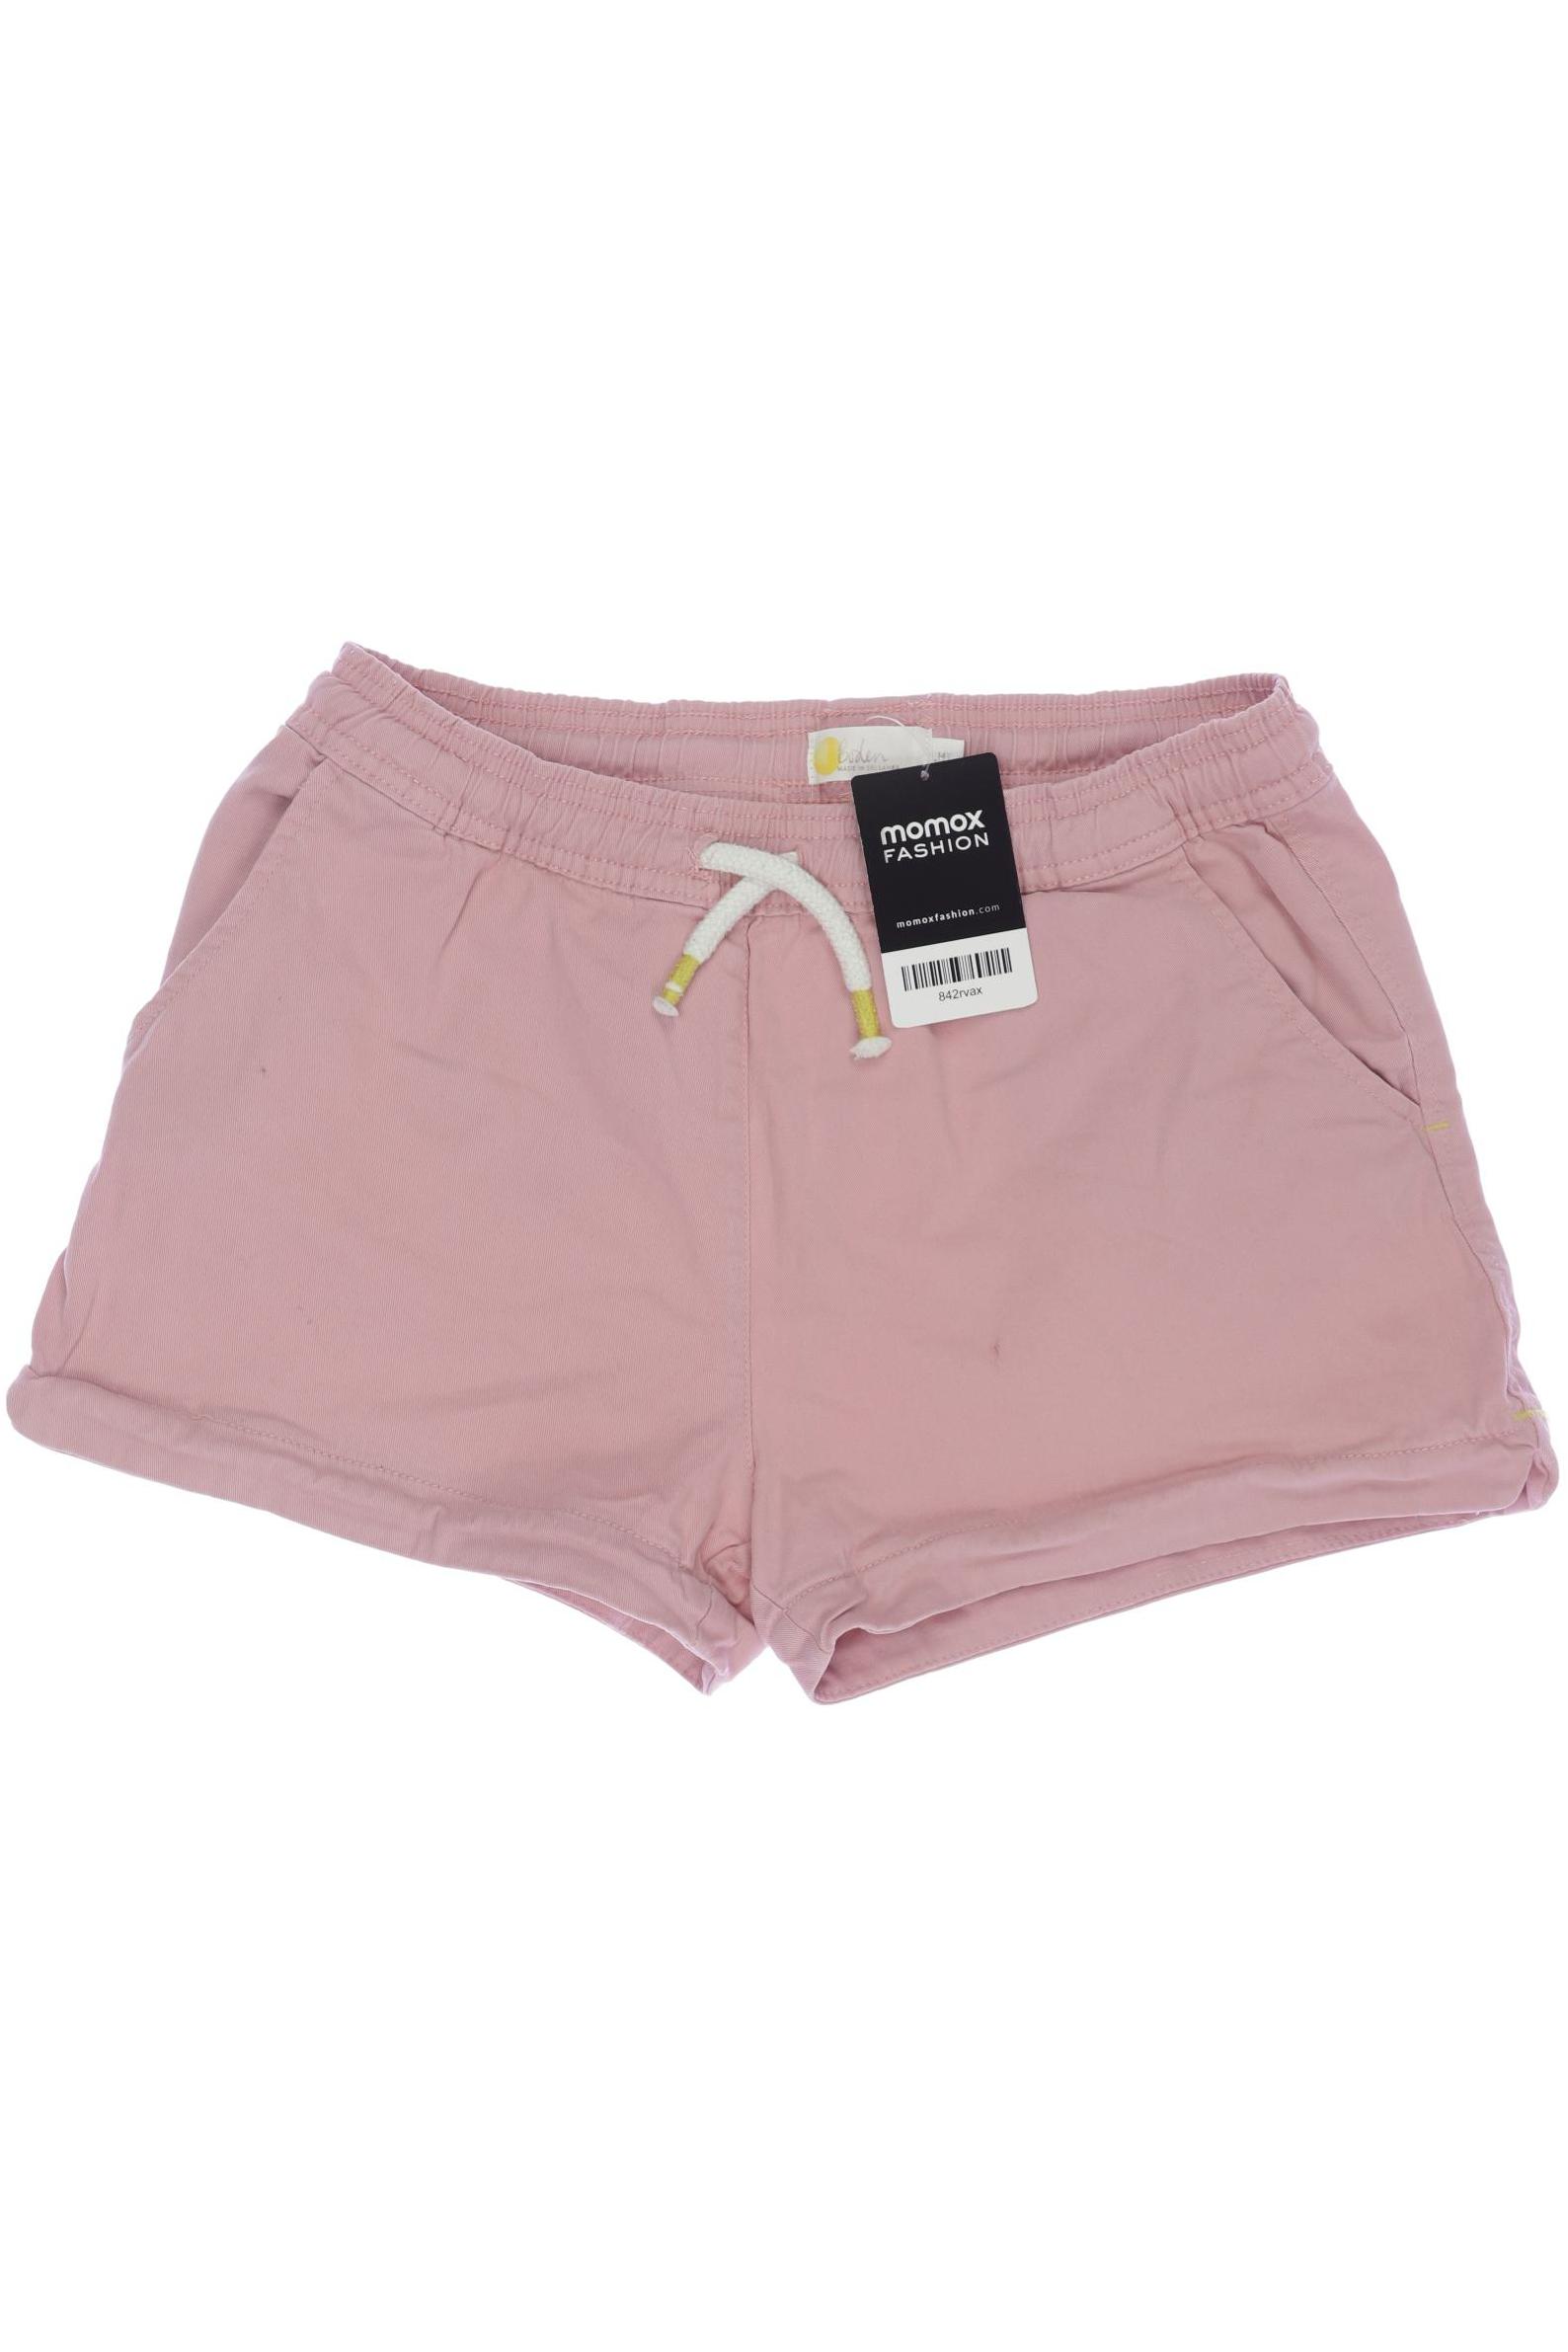 Boden Damen Shorts, pink, Gr. 164 von Boden